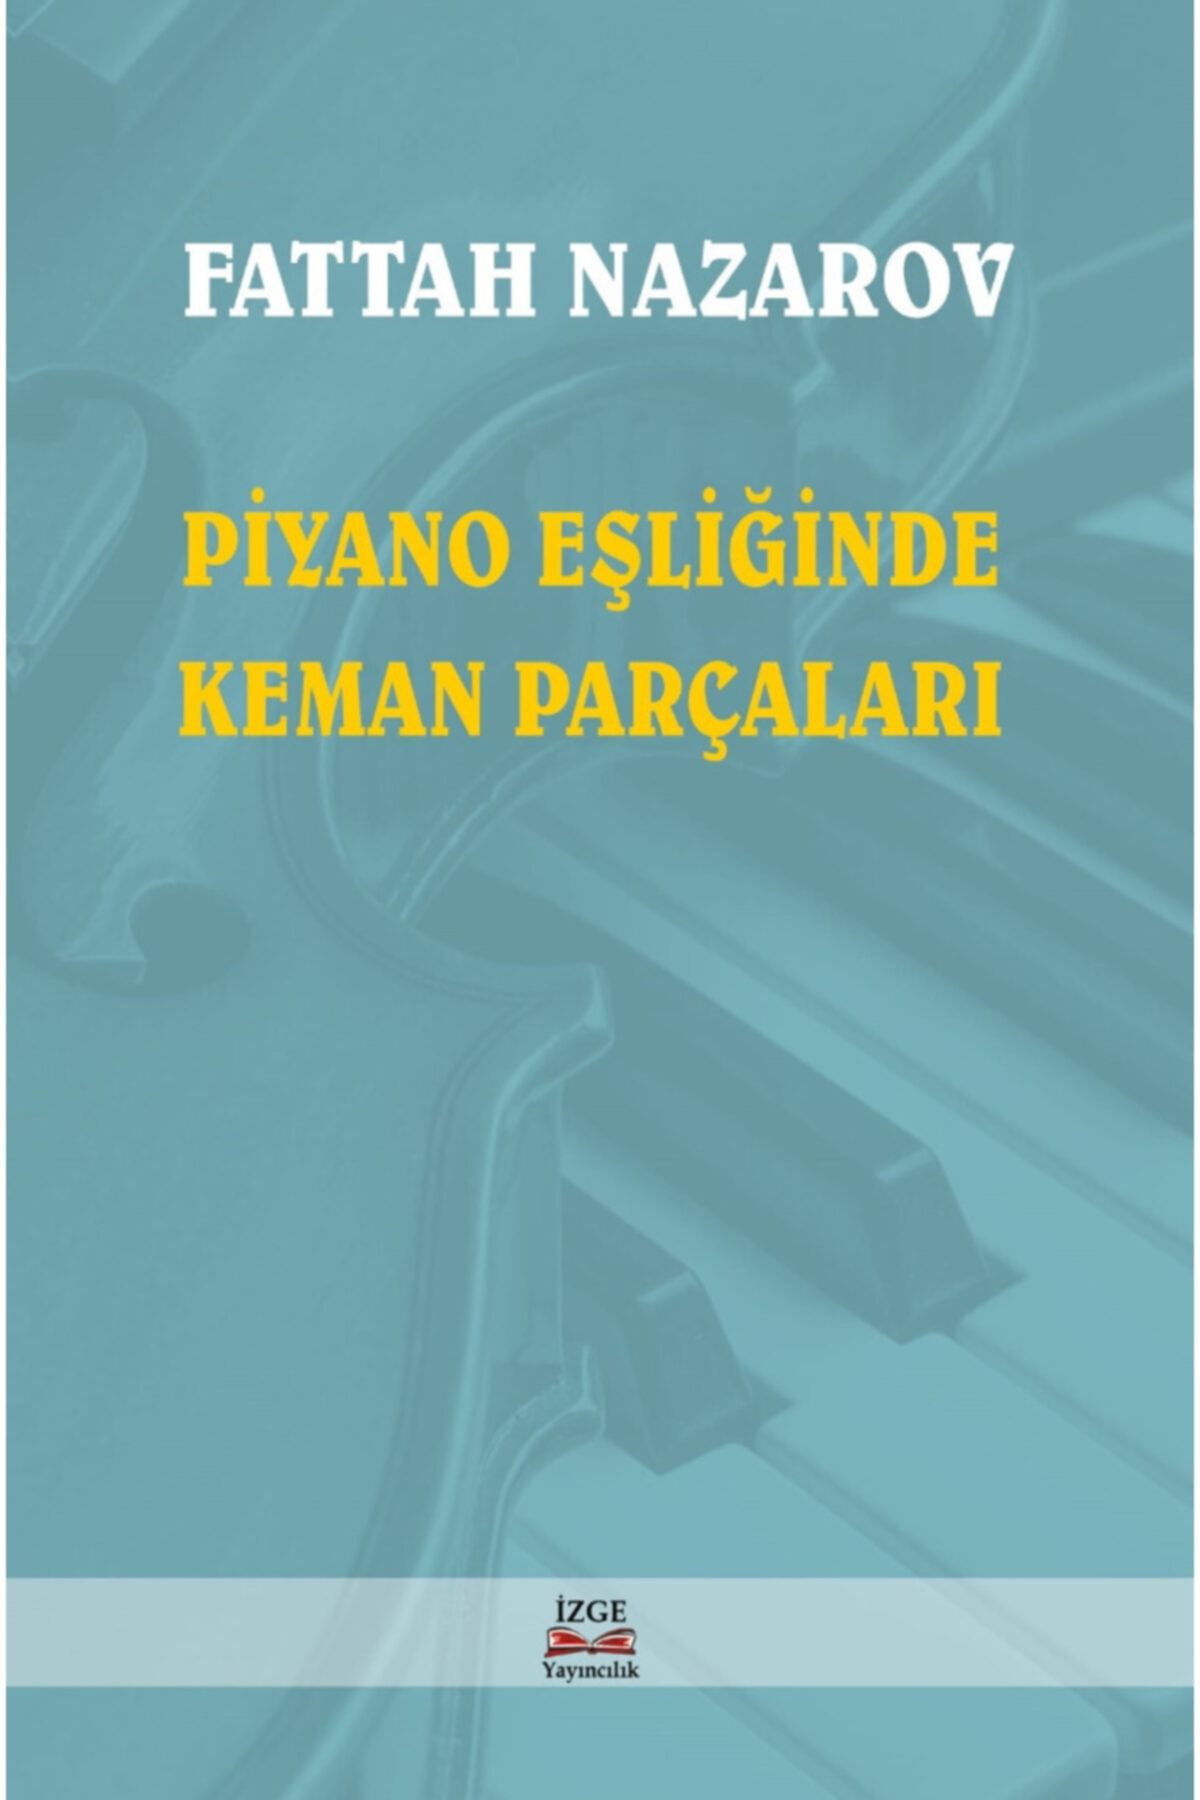 İzge Yayıncılık Piyano Eşliğinde Keman Parçaları - Fattah Nazarov -